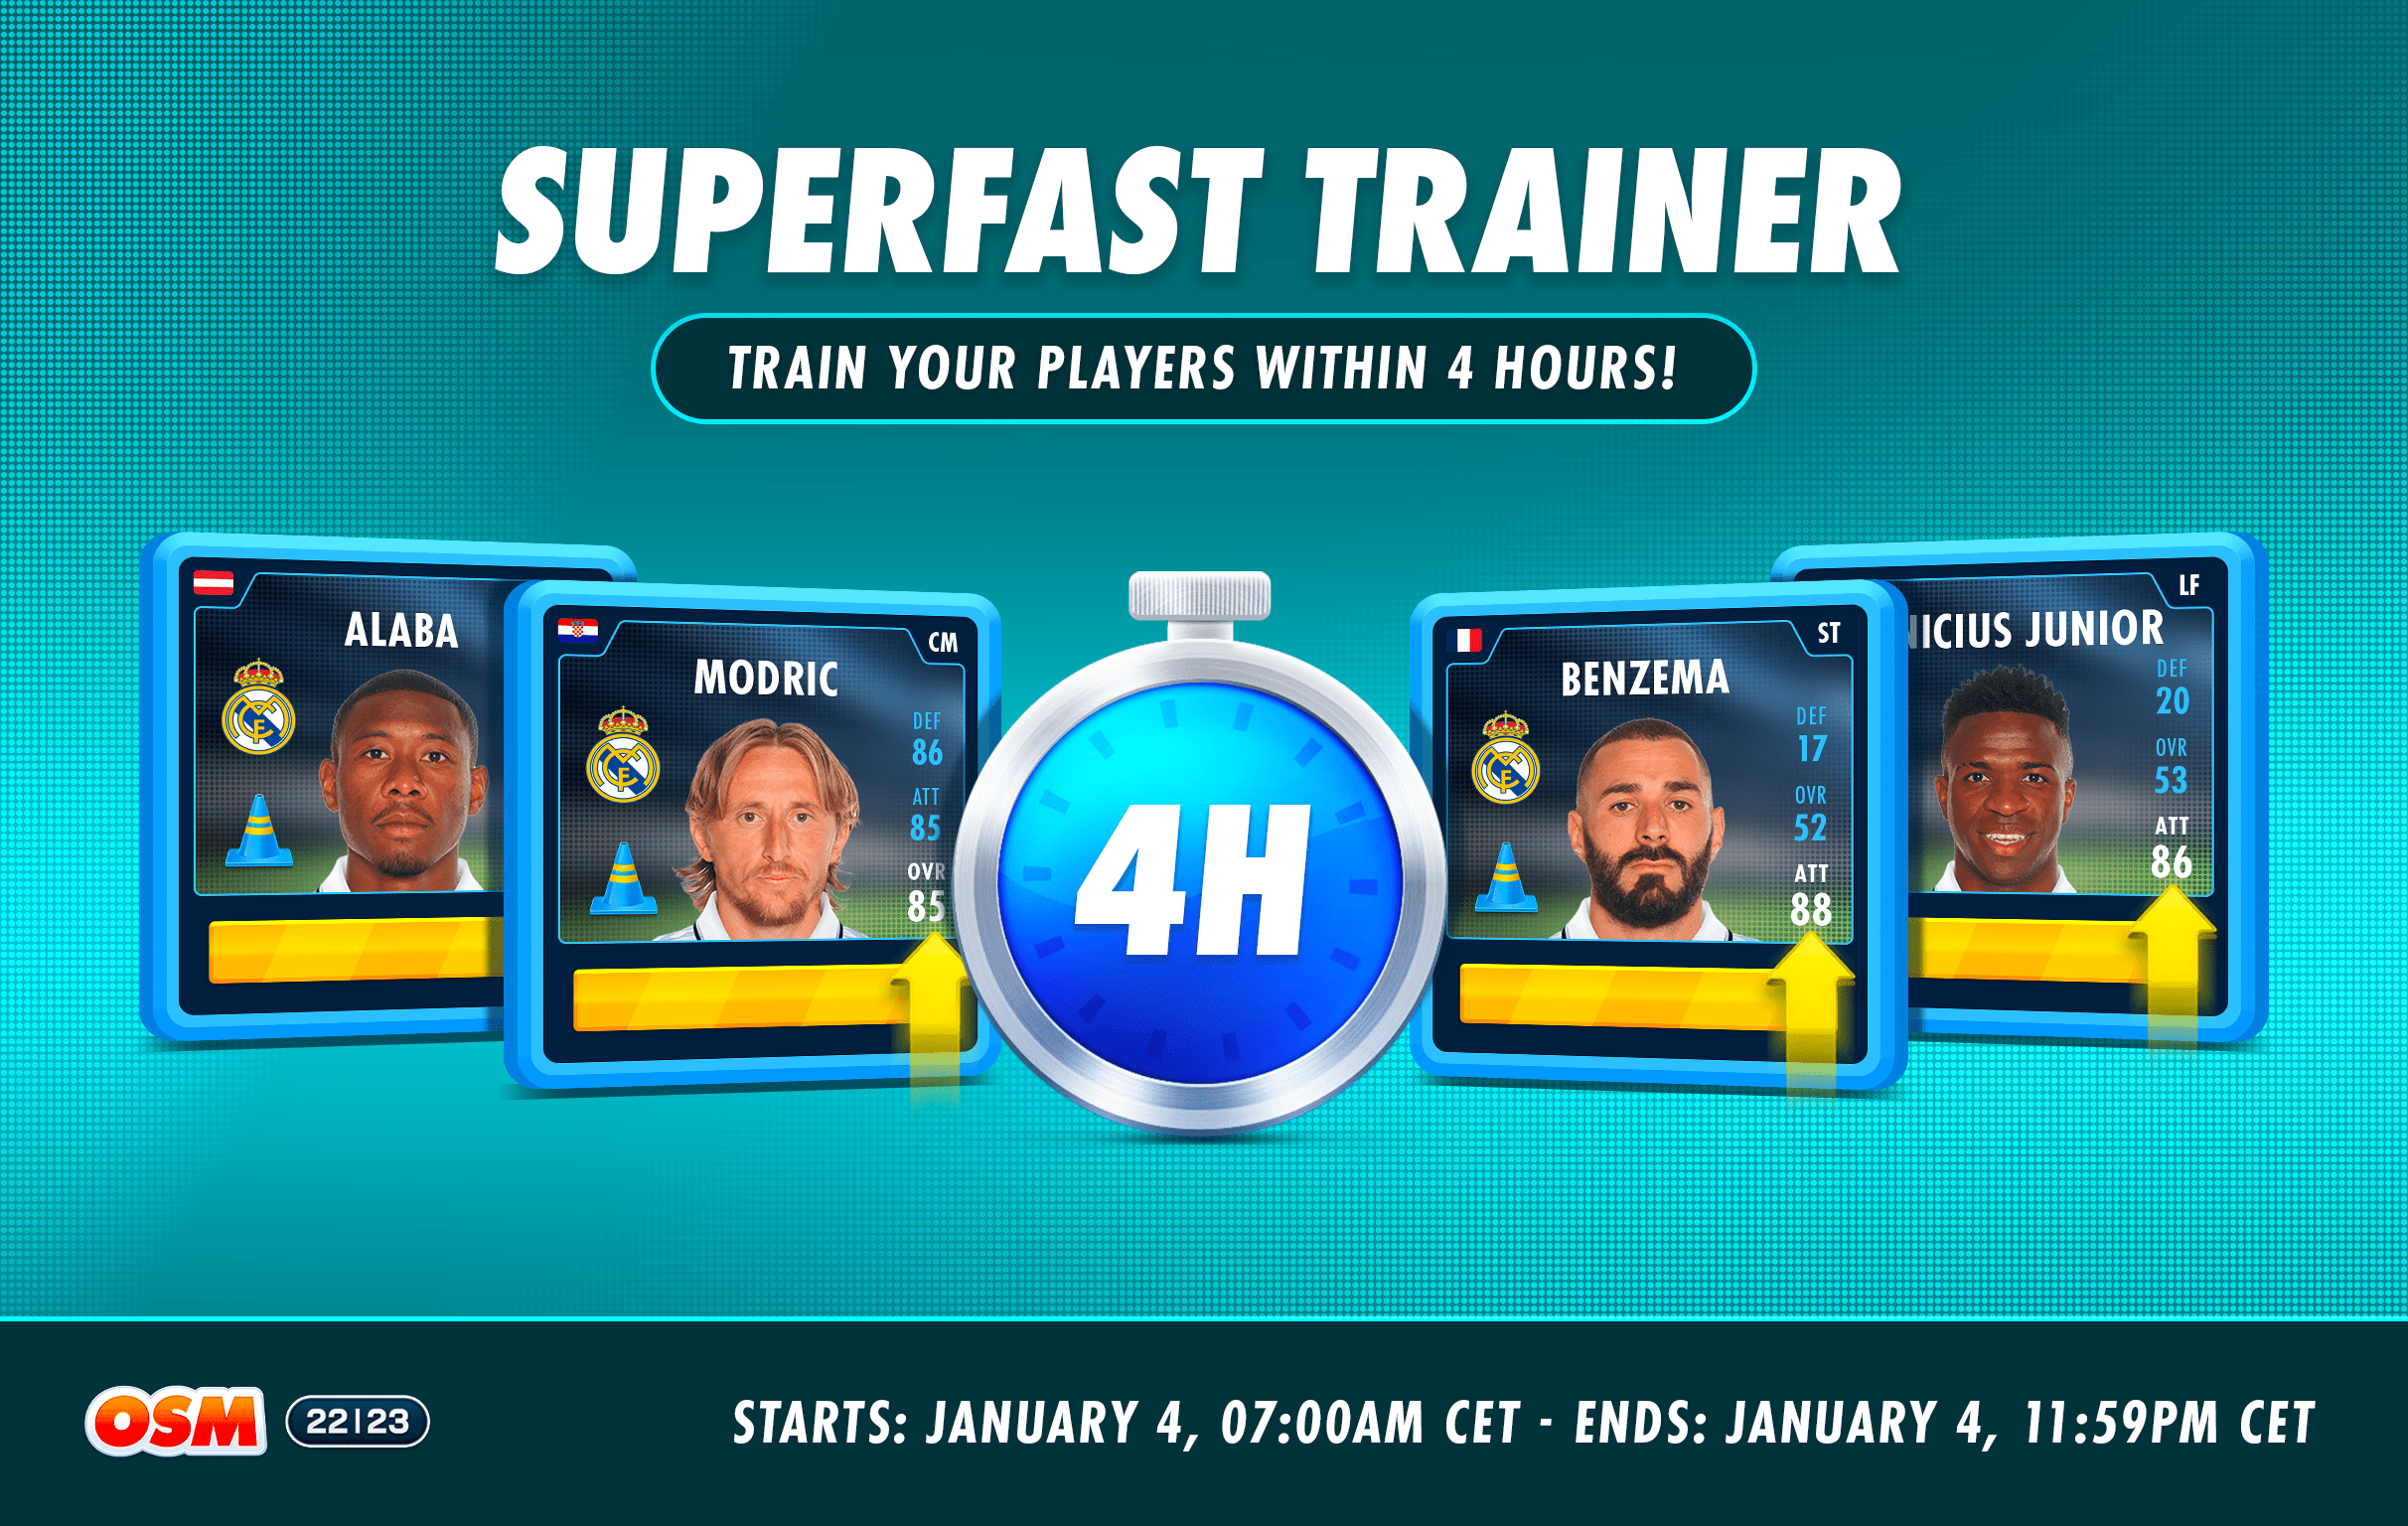 Forum_Superfast Trainer 4H_REDDIT-min.png